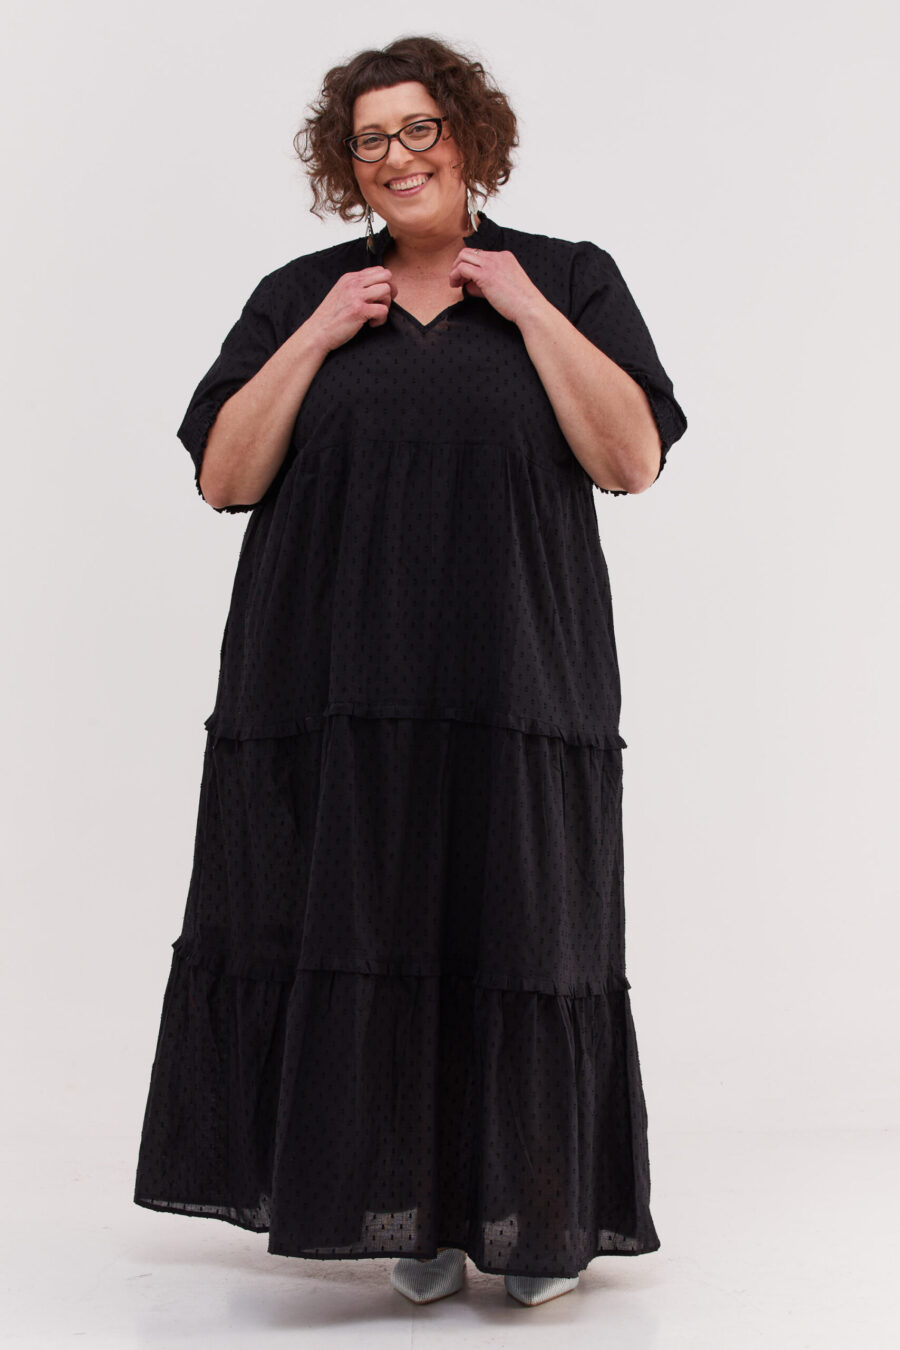 שמלת אפרת | שמלת מקסי בעיצוב ייחודי - שמלה שחורה עם עיגולים עדינים בבד שיוצרים טקסטורה מיוחדת